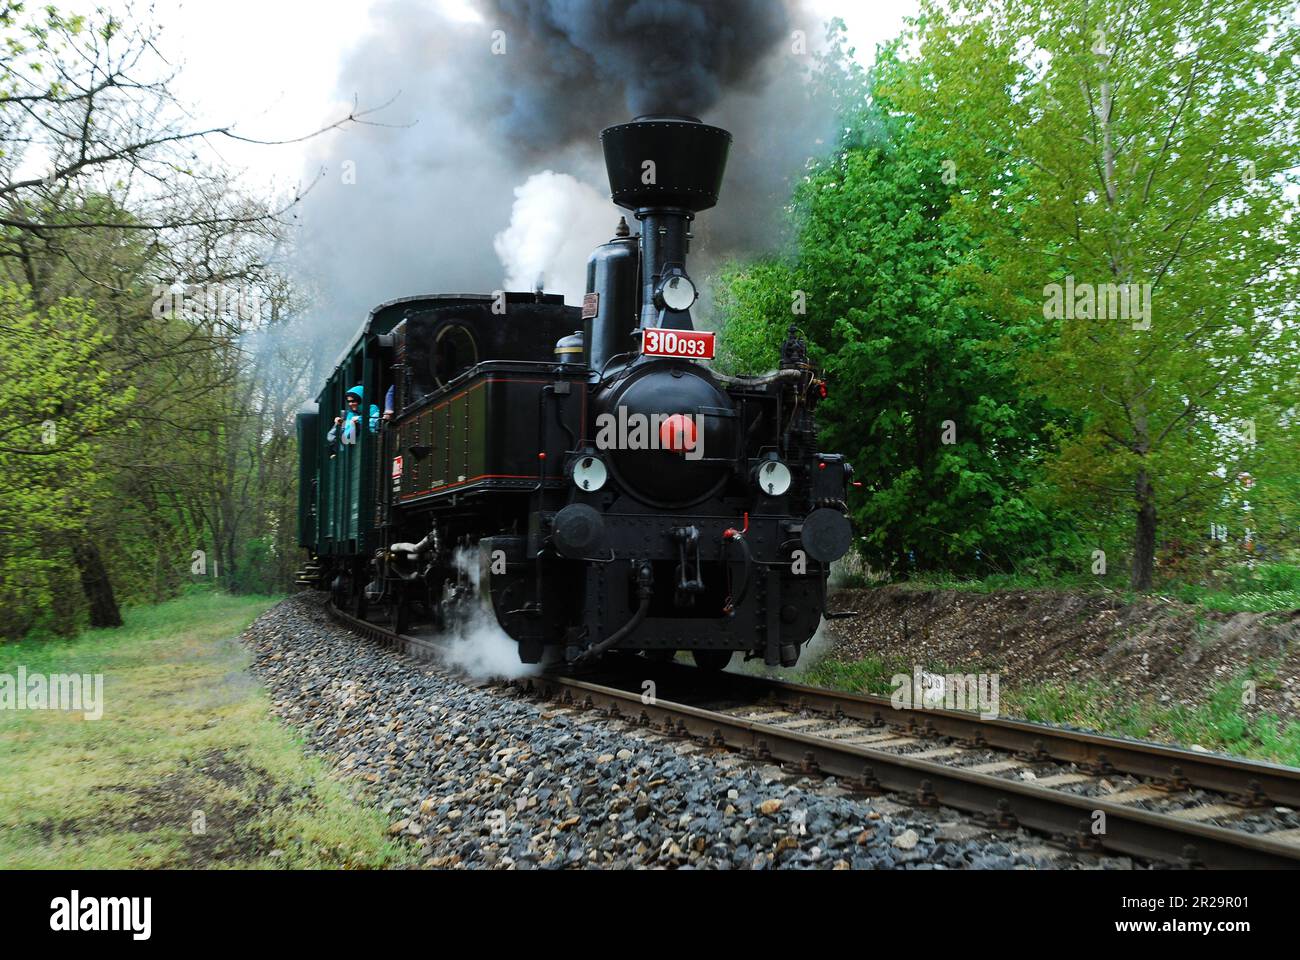 Storica locomotiva a vapore CSD 310,093, nick name 'Kafemlejnek' = macinacaffè alla stazione ferroviaria di Luzna vicino a Rakovnik durante il fine settimana di azione vapore Foto Stock